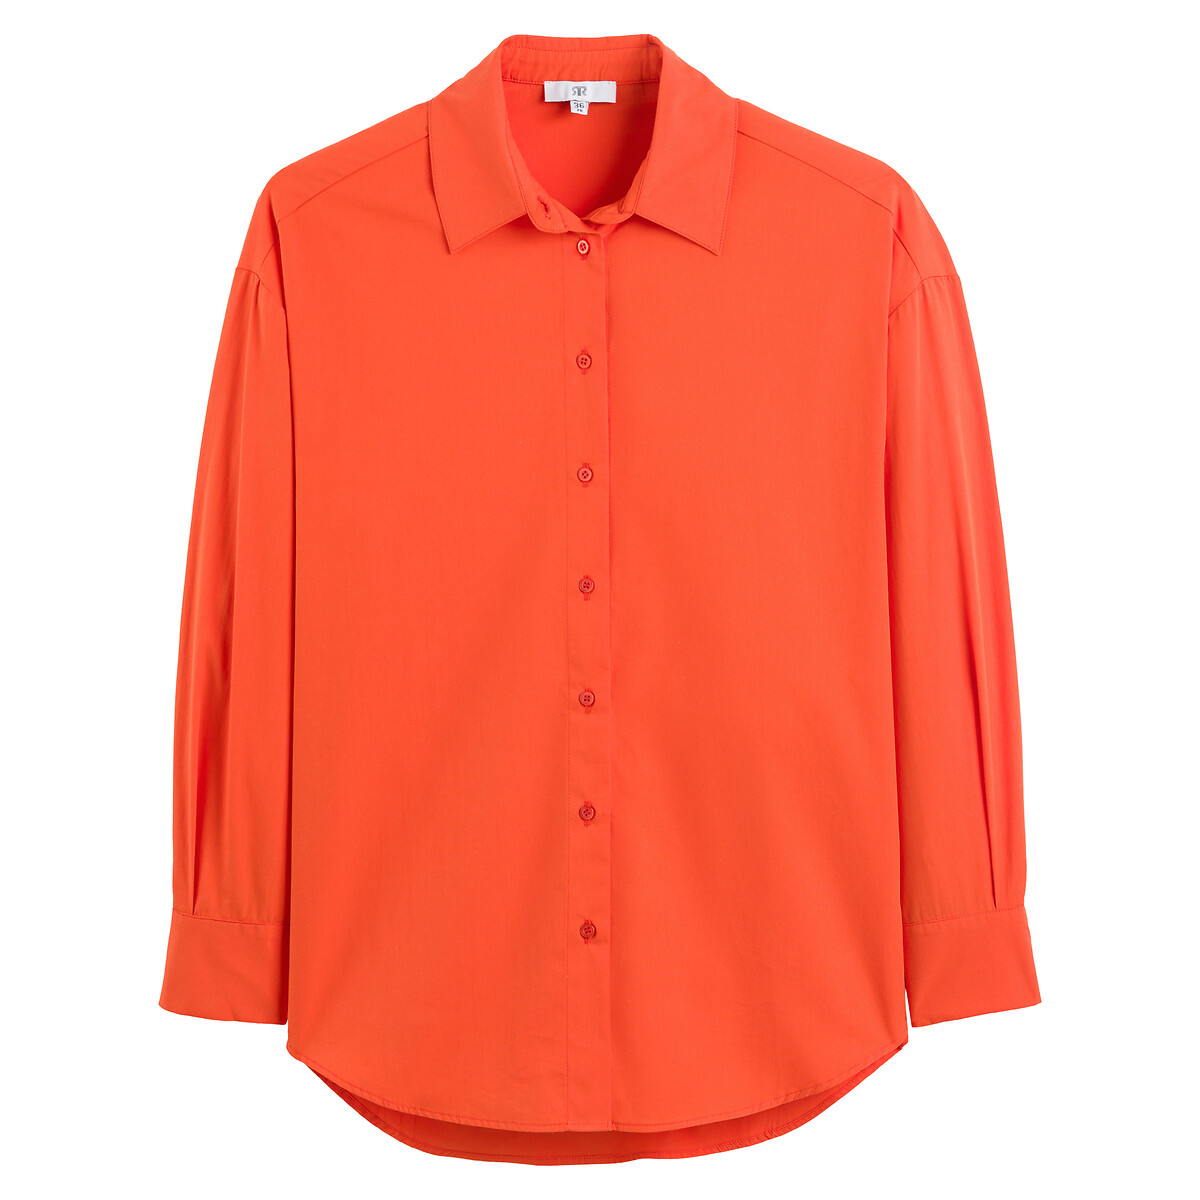 Рубашка Широкая с длинными рукавами 46 (FR) - 52 (RUS) оранжевый LaRedoute, размер 46 (FR) - 52 (RUS) Рубашка Широкая с длинными рукавами 46 (FR) - 52 (RUS) оранжевый - фото 5